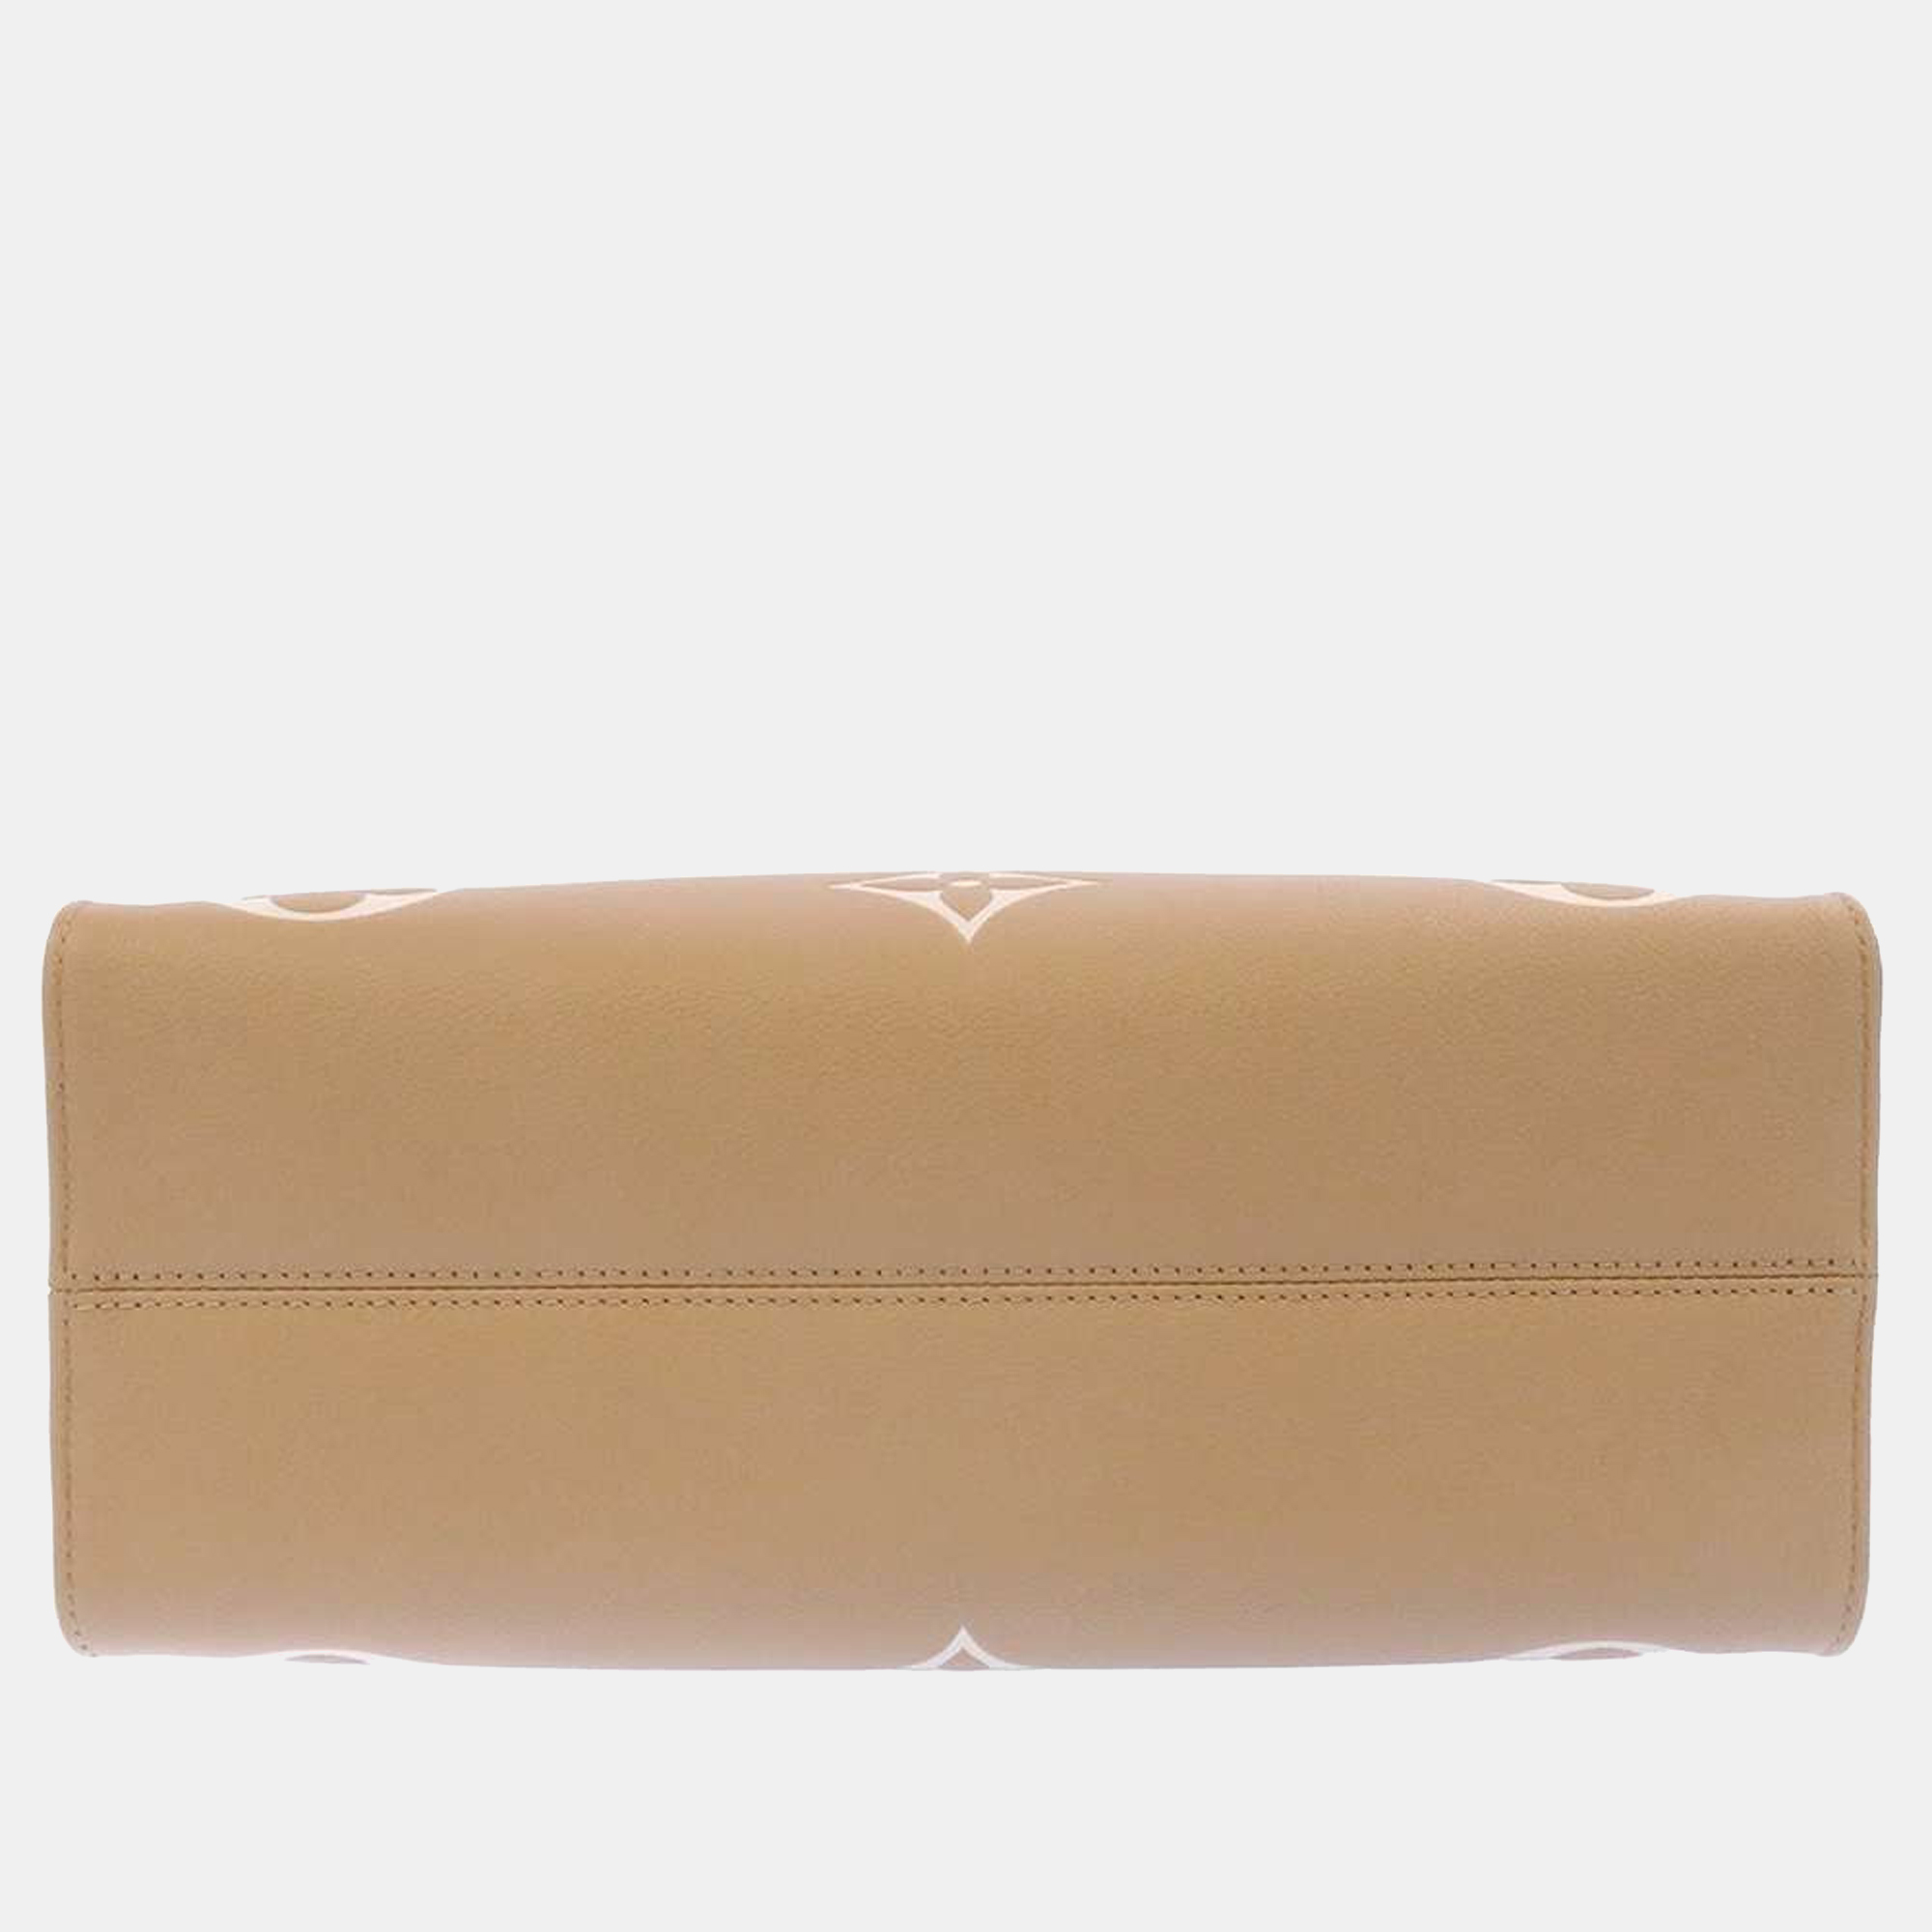 Louis Vuitton Beige Monogram Empreinte Leather Onthego MM